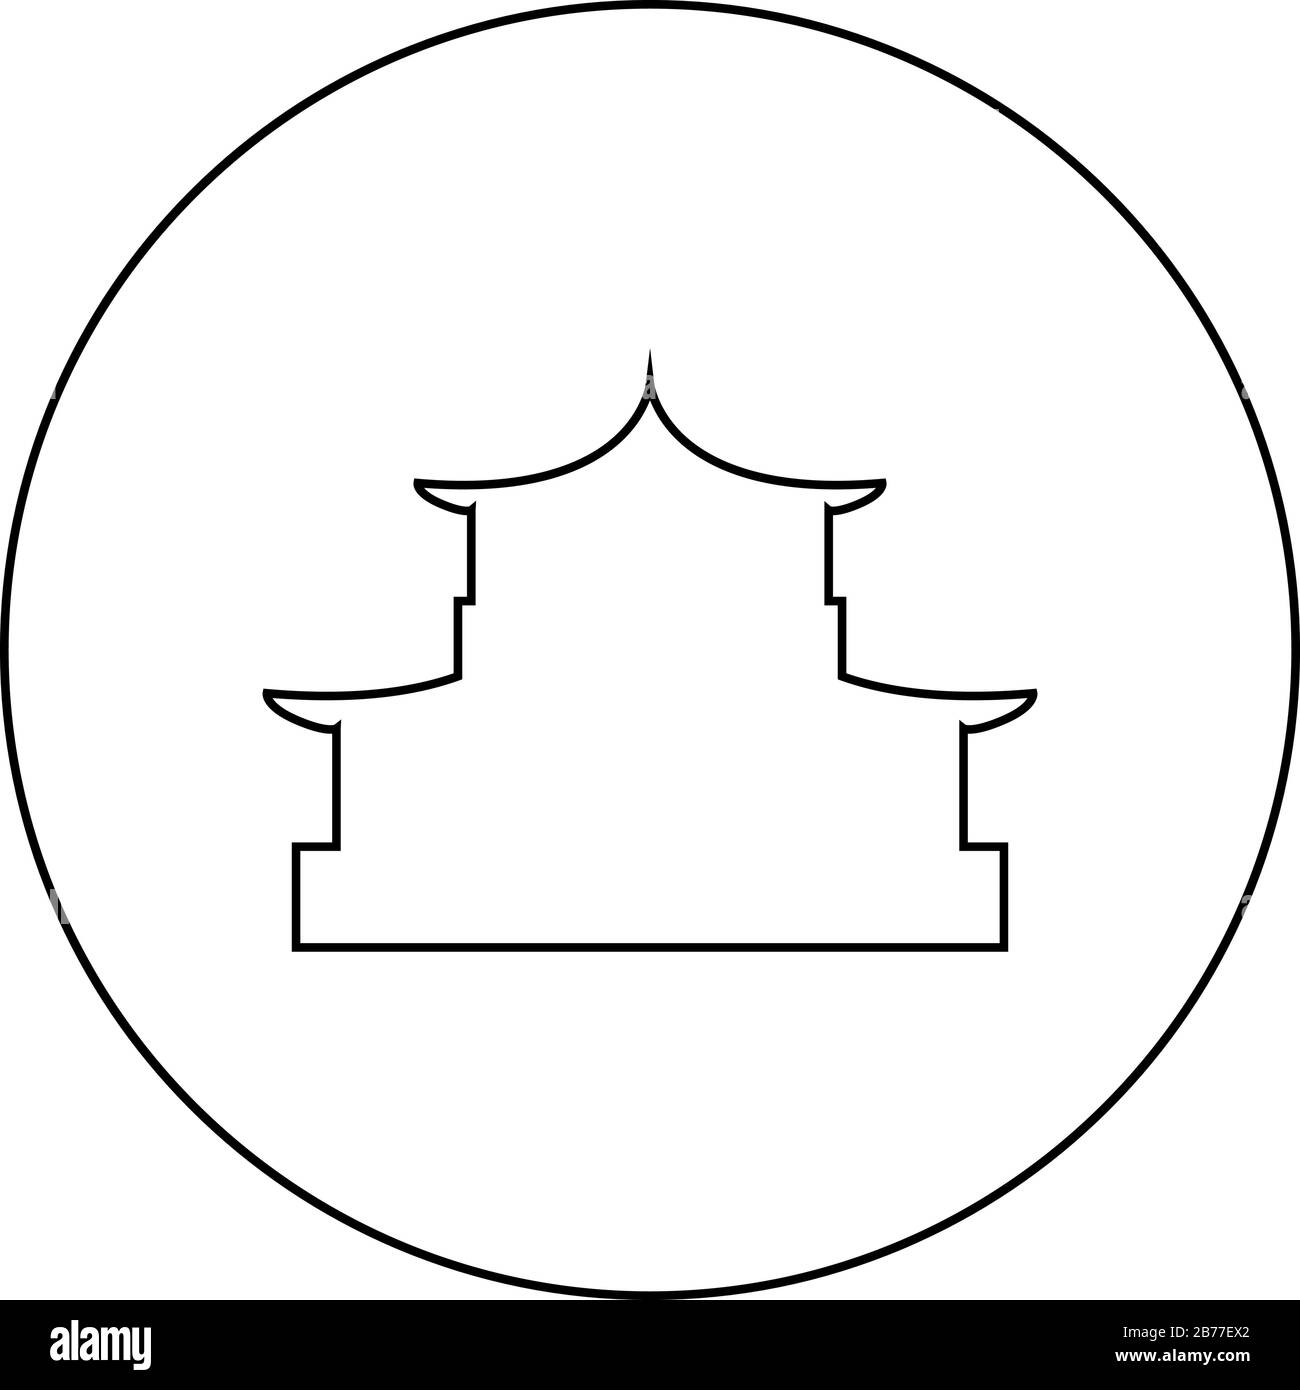 Chinesische House-Silhouette traditionelle asiatische Pagode japanische Domfassade Ikone im Kreis rund umrandet schwarze Farbe Vektor-Illustration flacher Stil Stock Vektor